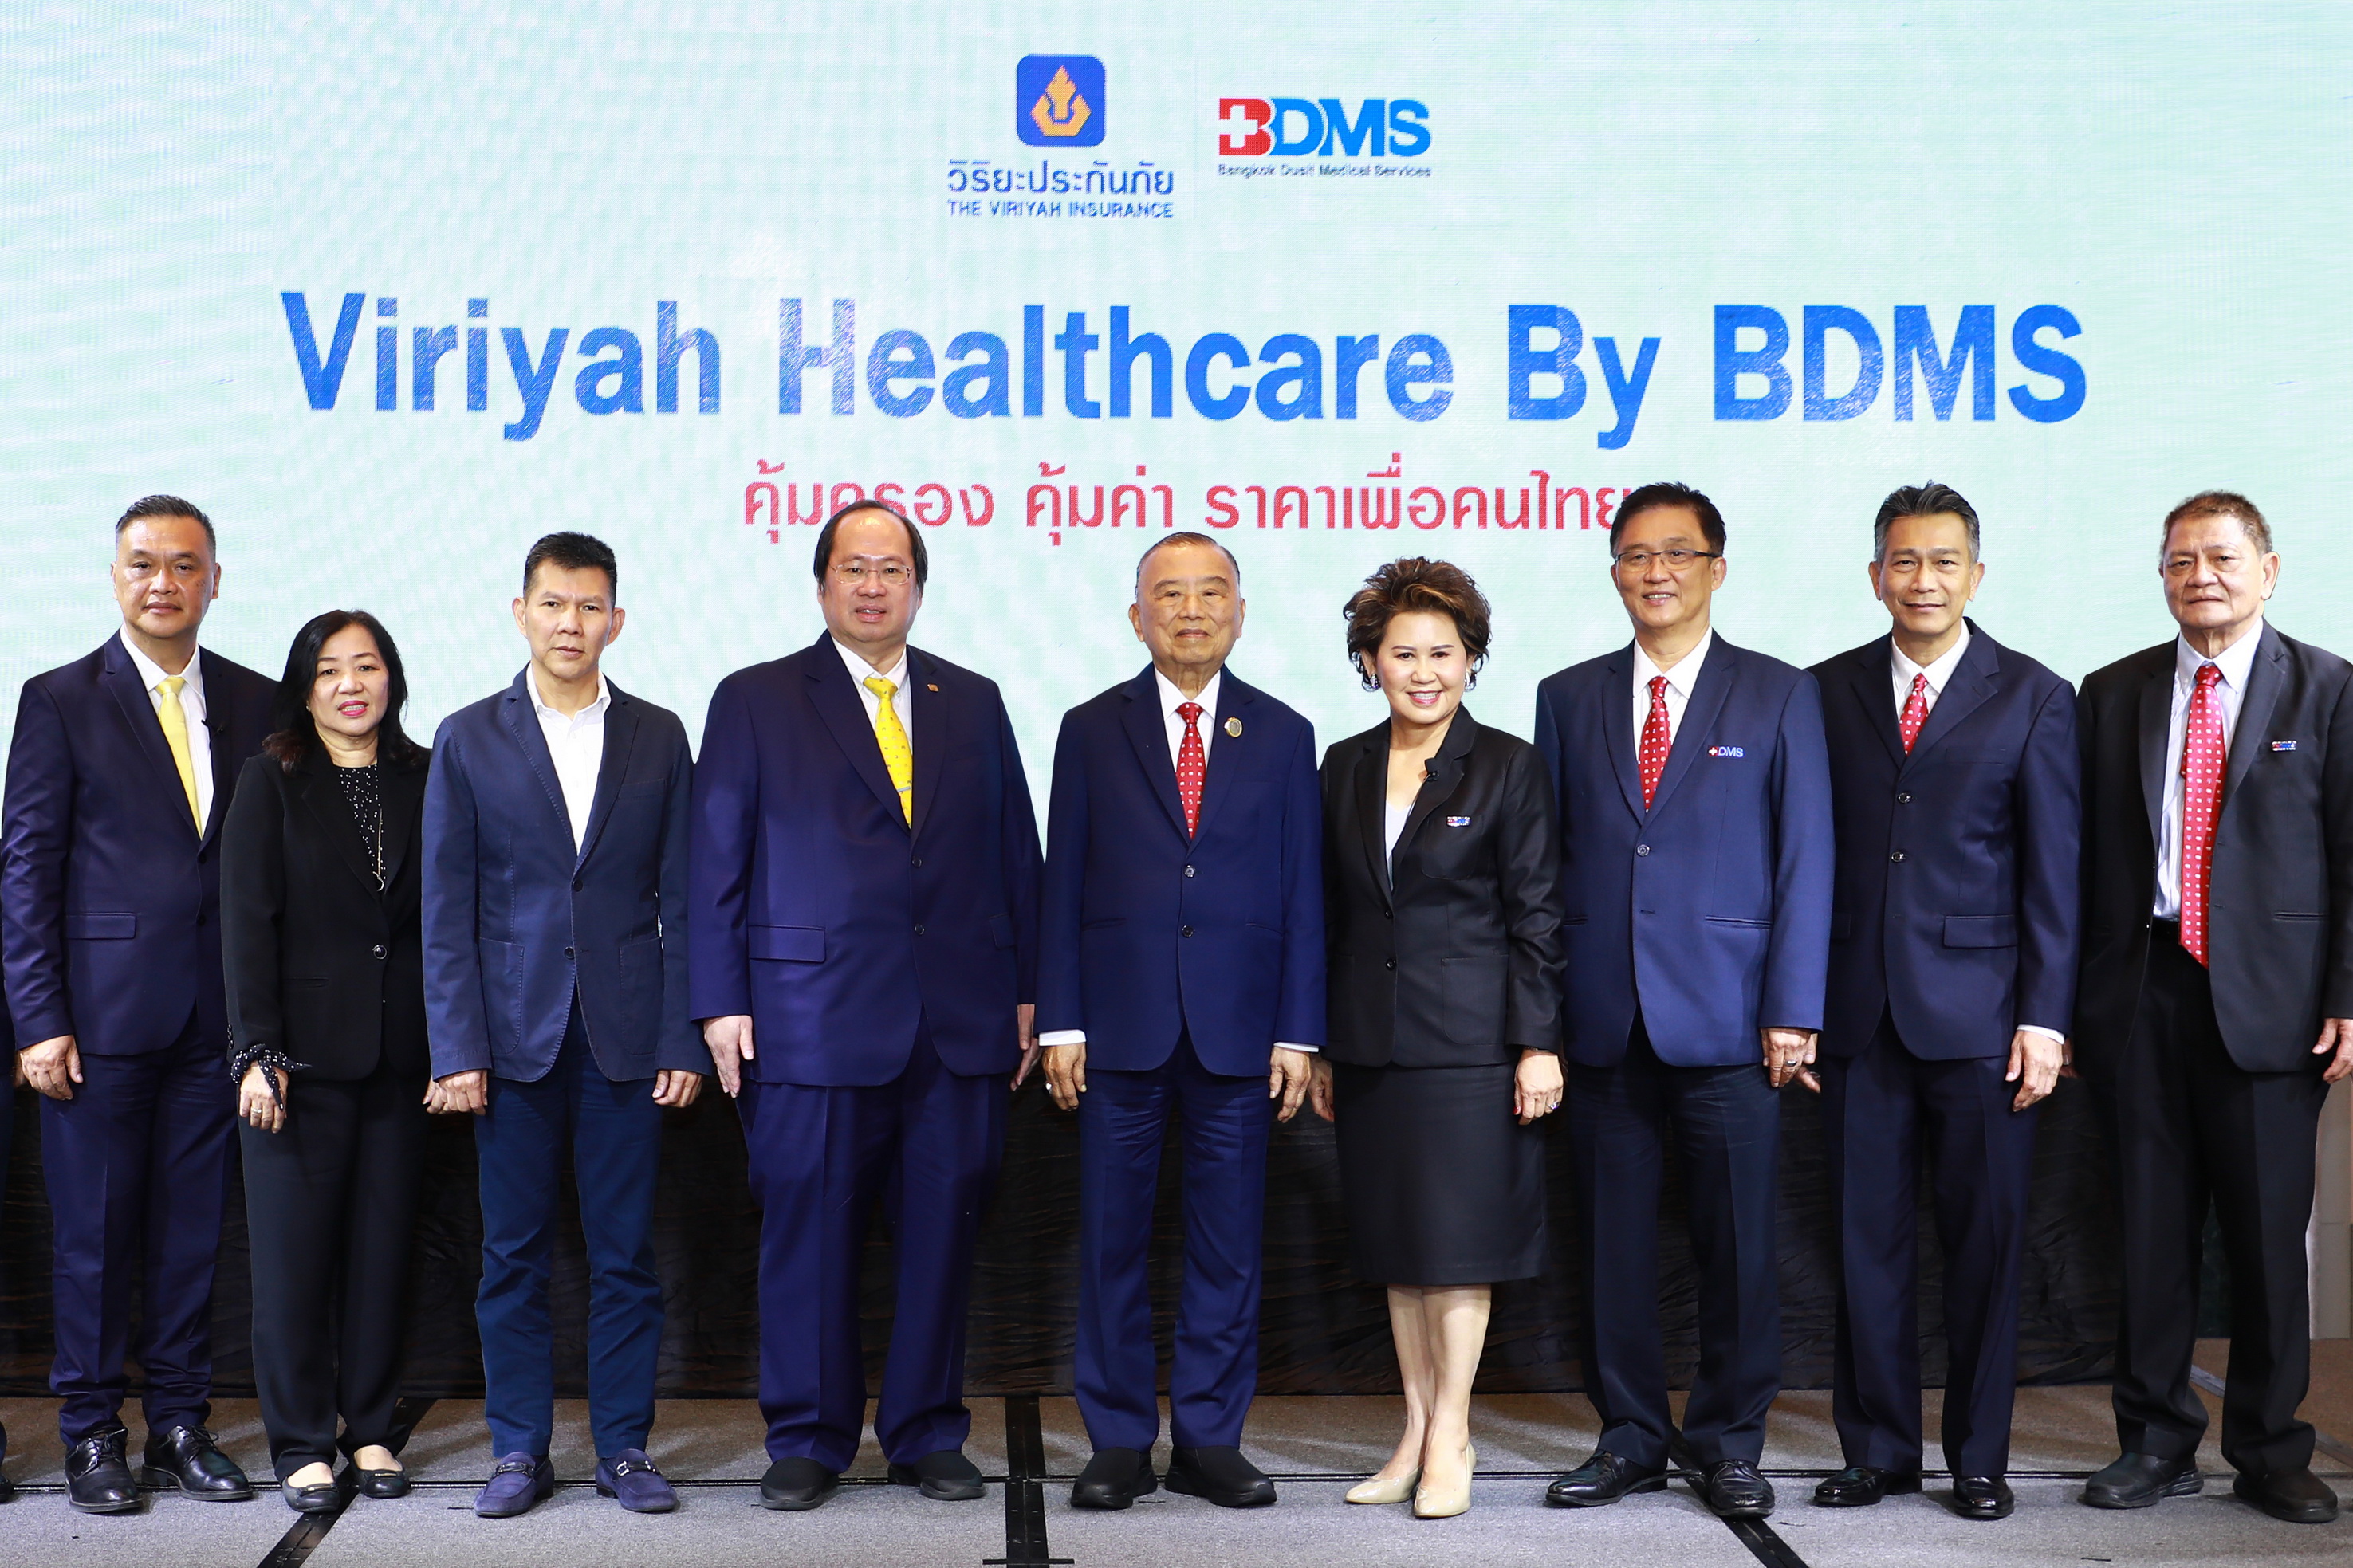 ภาพข่าว: BDMS จับมือ วิริยะประกันภัย ร่วมโครงการ Viriyah Healthcare by BDMS 'คุ้มครอง คุ้มค่า ราคาเพื่อคนไทย